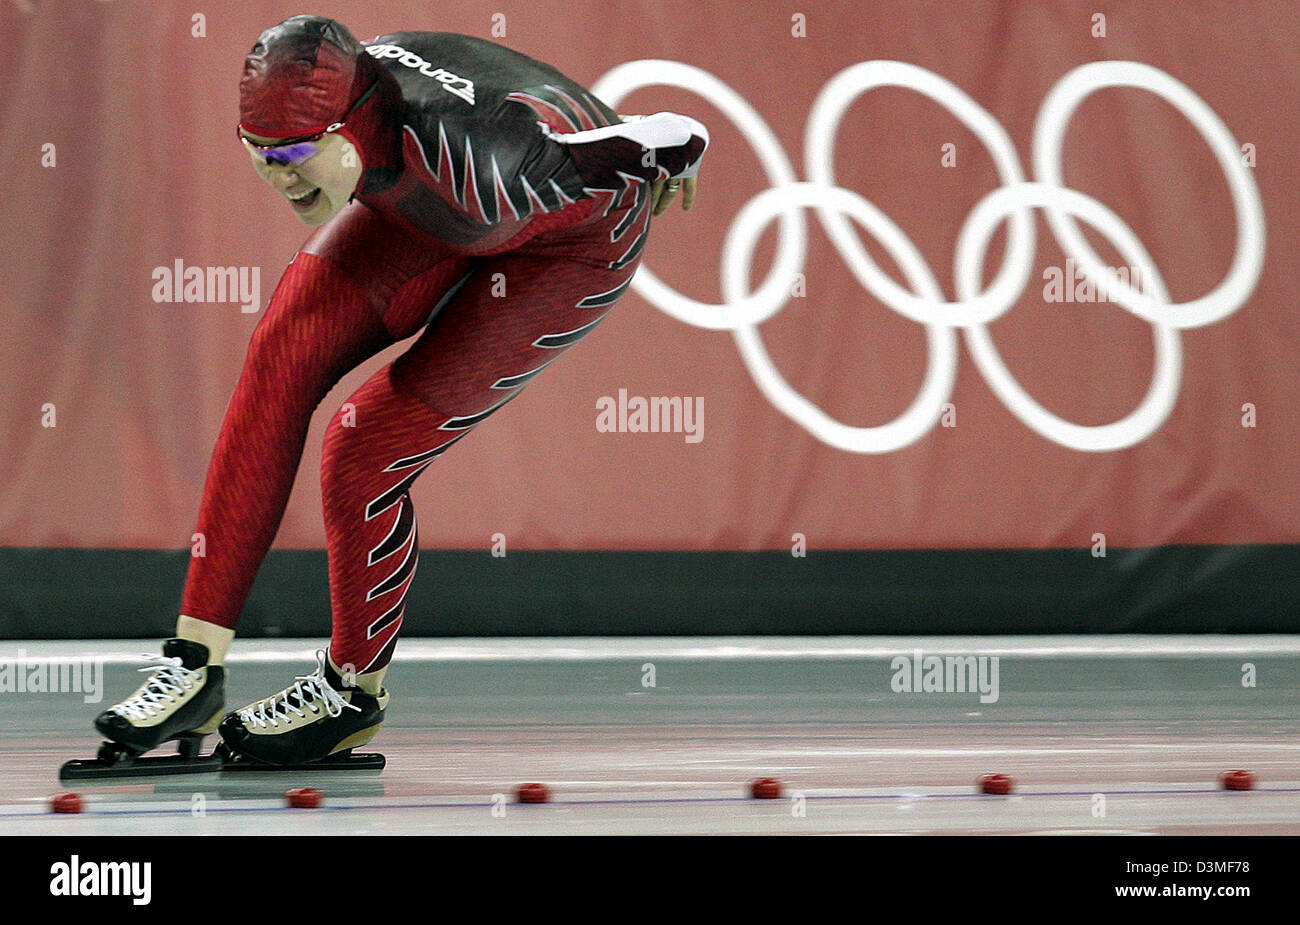 (Afp) - La patineuse de vitesse canadienne Clara Hughes photographié dans la patinoire de vitesse sur glace à Turin, Italie, 25 février 2006. Hughes a remporté la médaille d'or olympique dans l'épreuve féminine du 5 000m. Photo : Frank May Banque D'Images